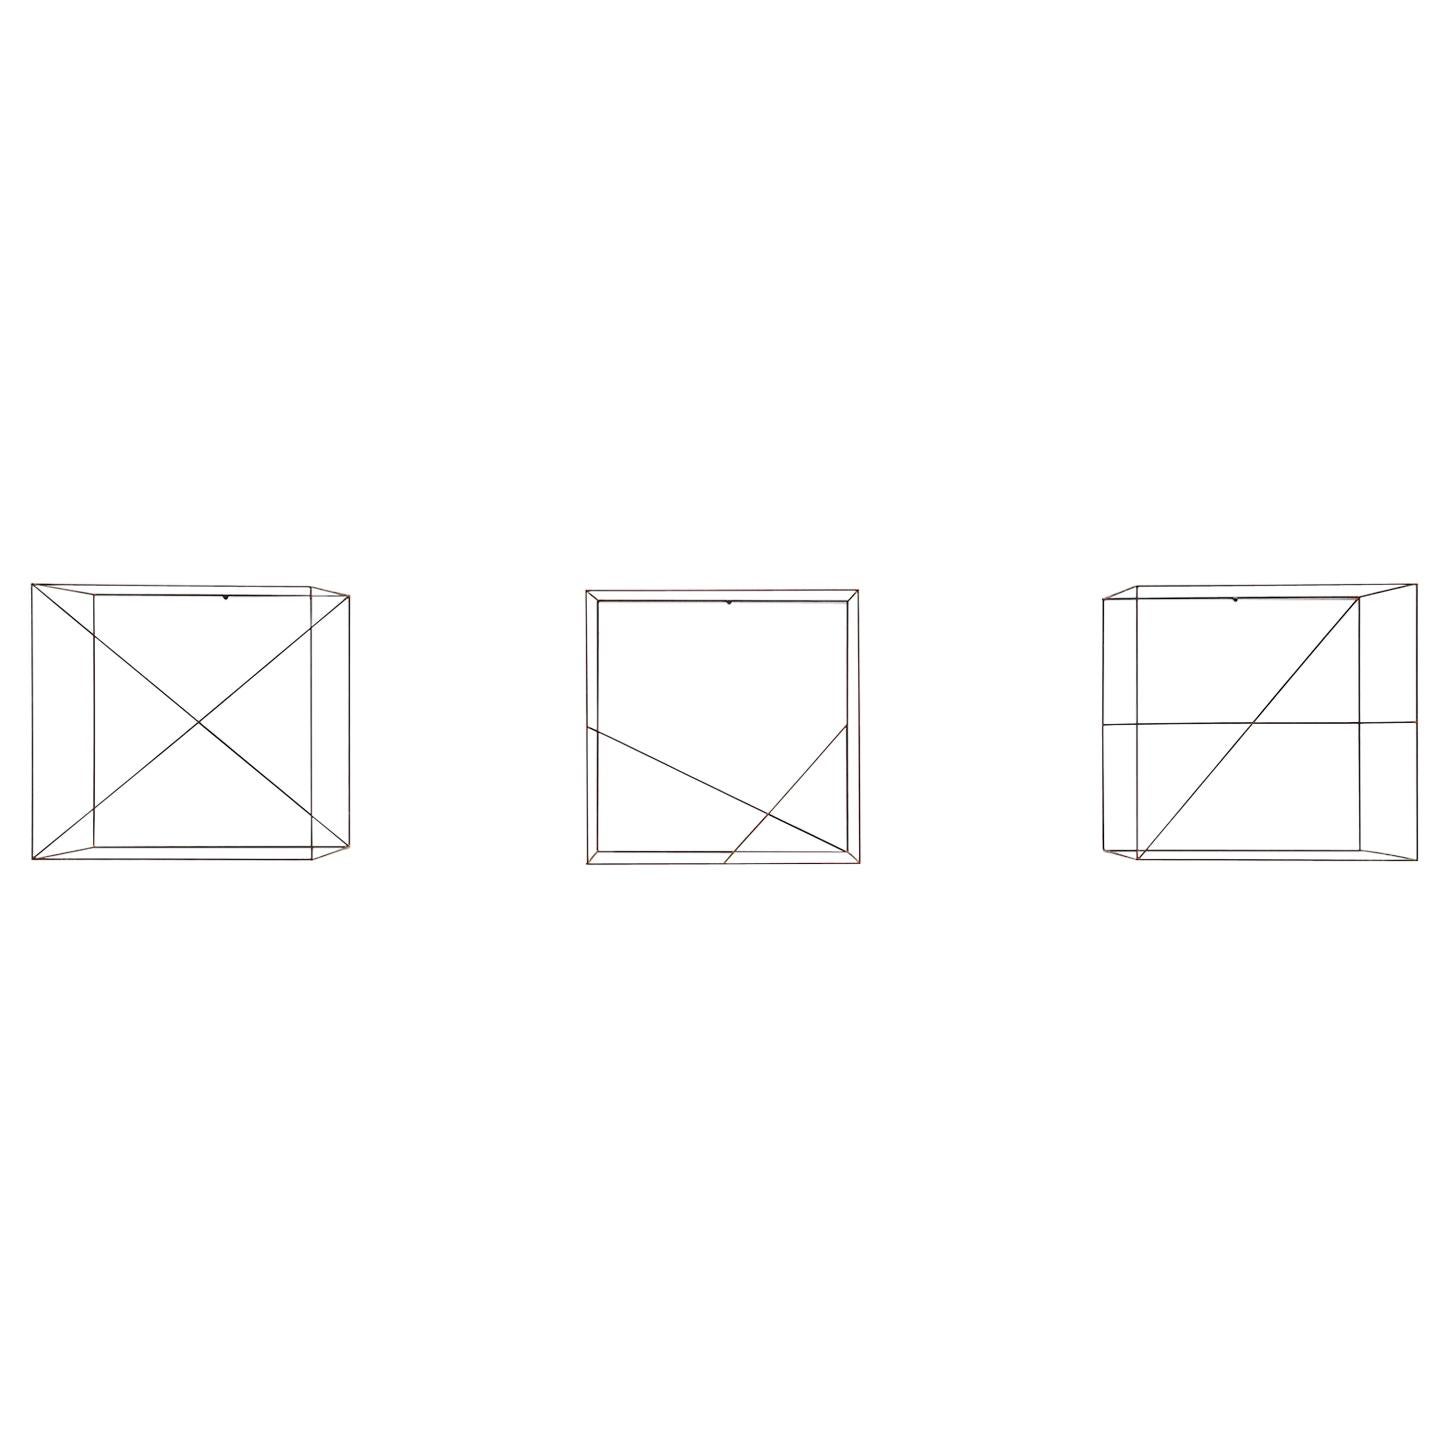 Anne Rose Regenboog Cubes Cross Set, DEN, 2015